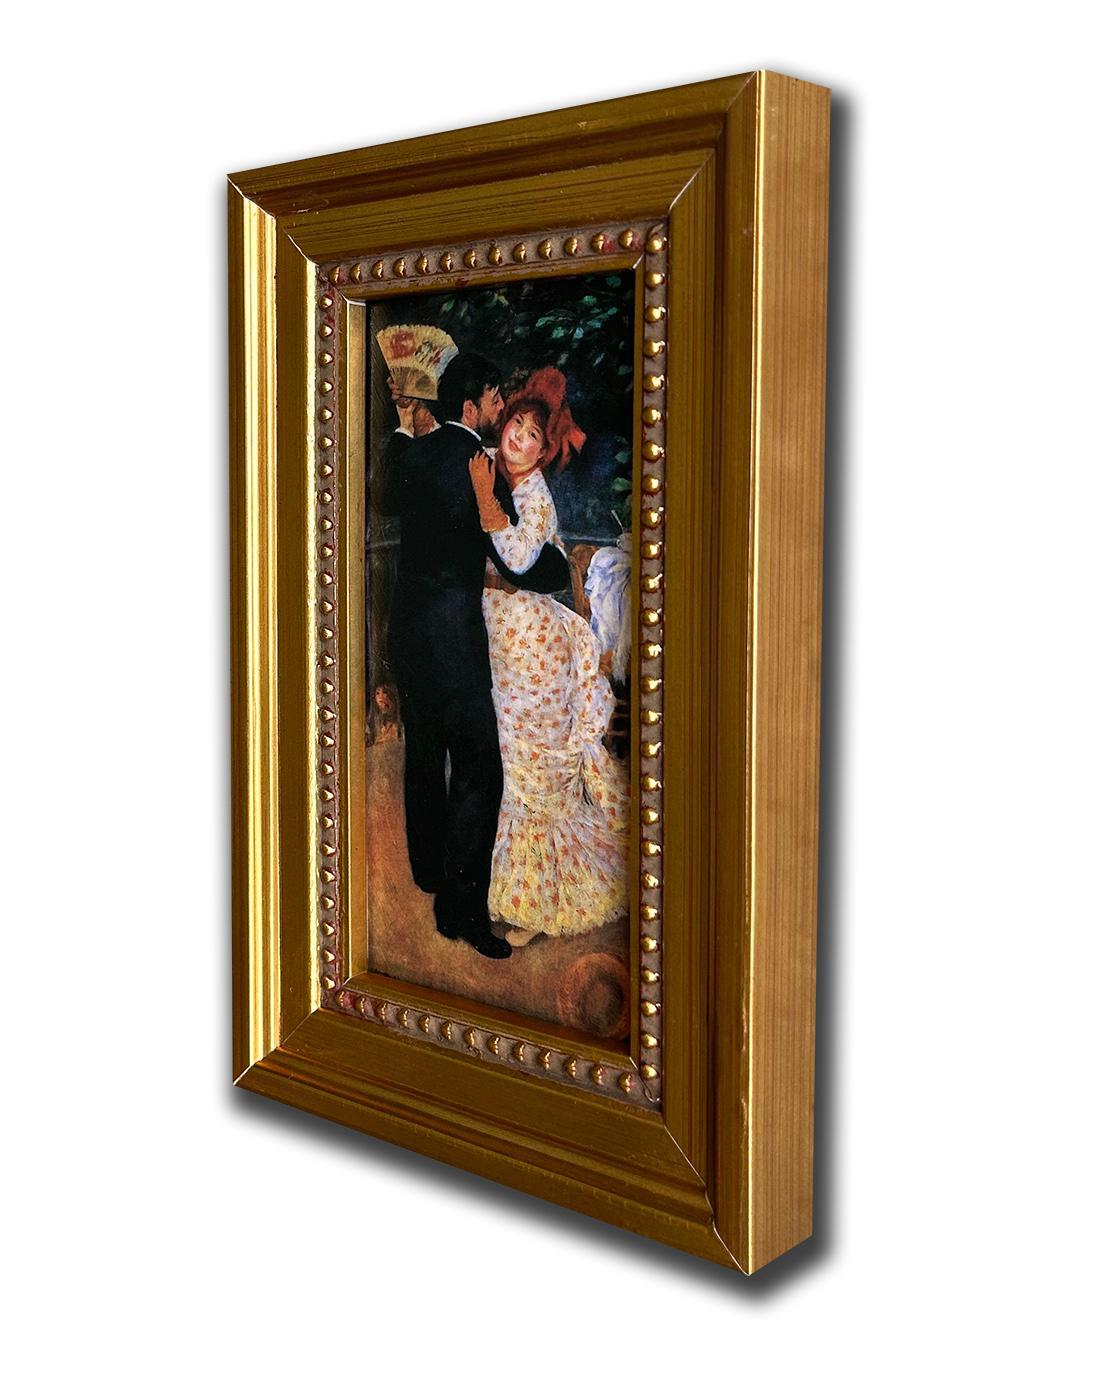 County dance of Pierre-Auguste Renoir, whole size 12x18 cm